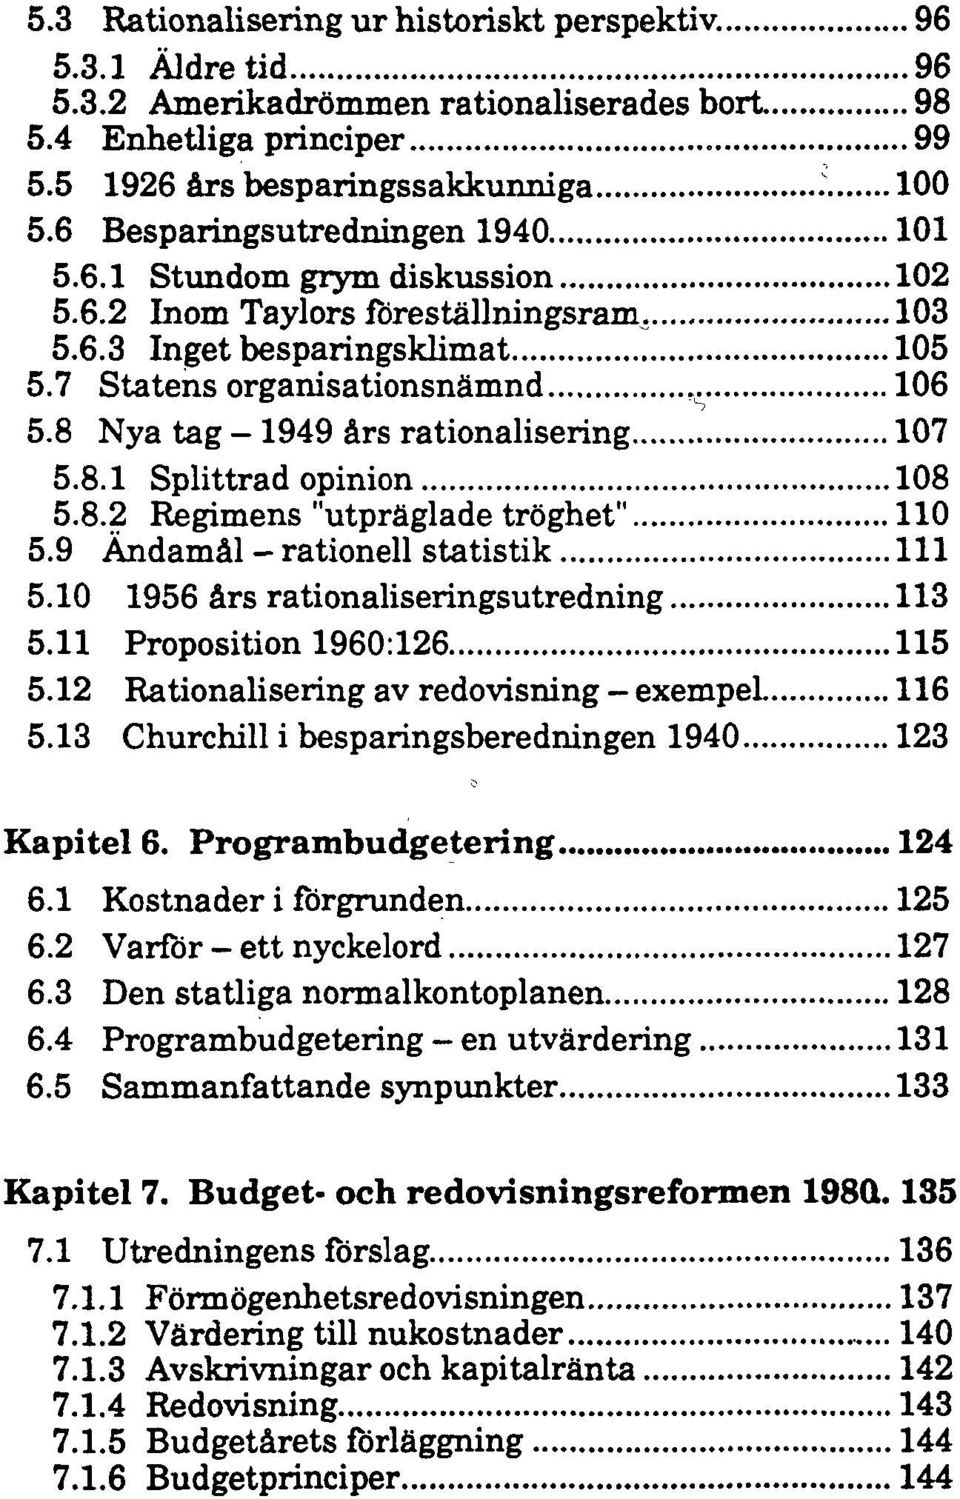 8 Nya tag - 1949 års rationalisering 107 5.8.1 Splittrad opinion 108 5.8.2 Regimens "utpräglade tröghet" 110 5.9 Ändamål - rationell statistik 111 5.10 1956 års rationaliseringsutredning 113 5.